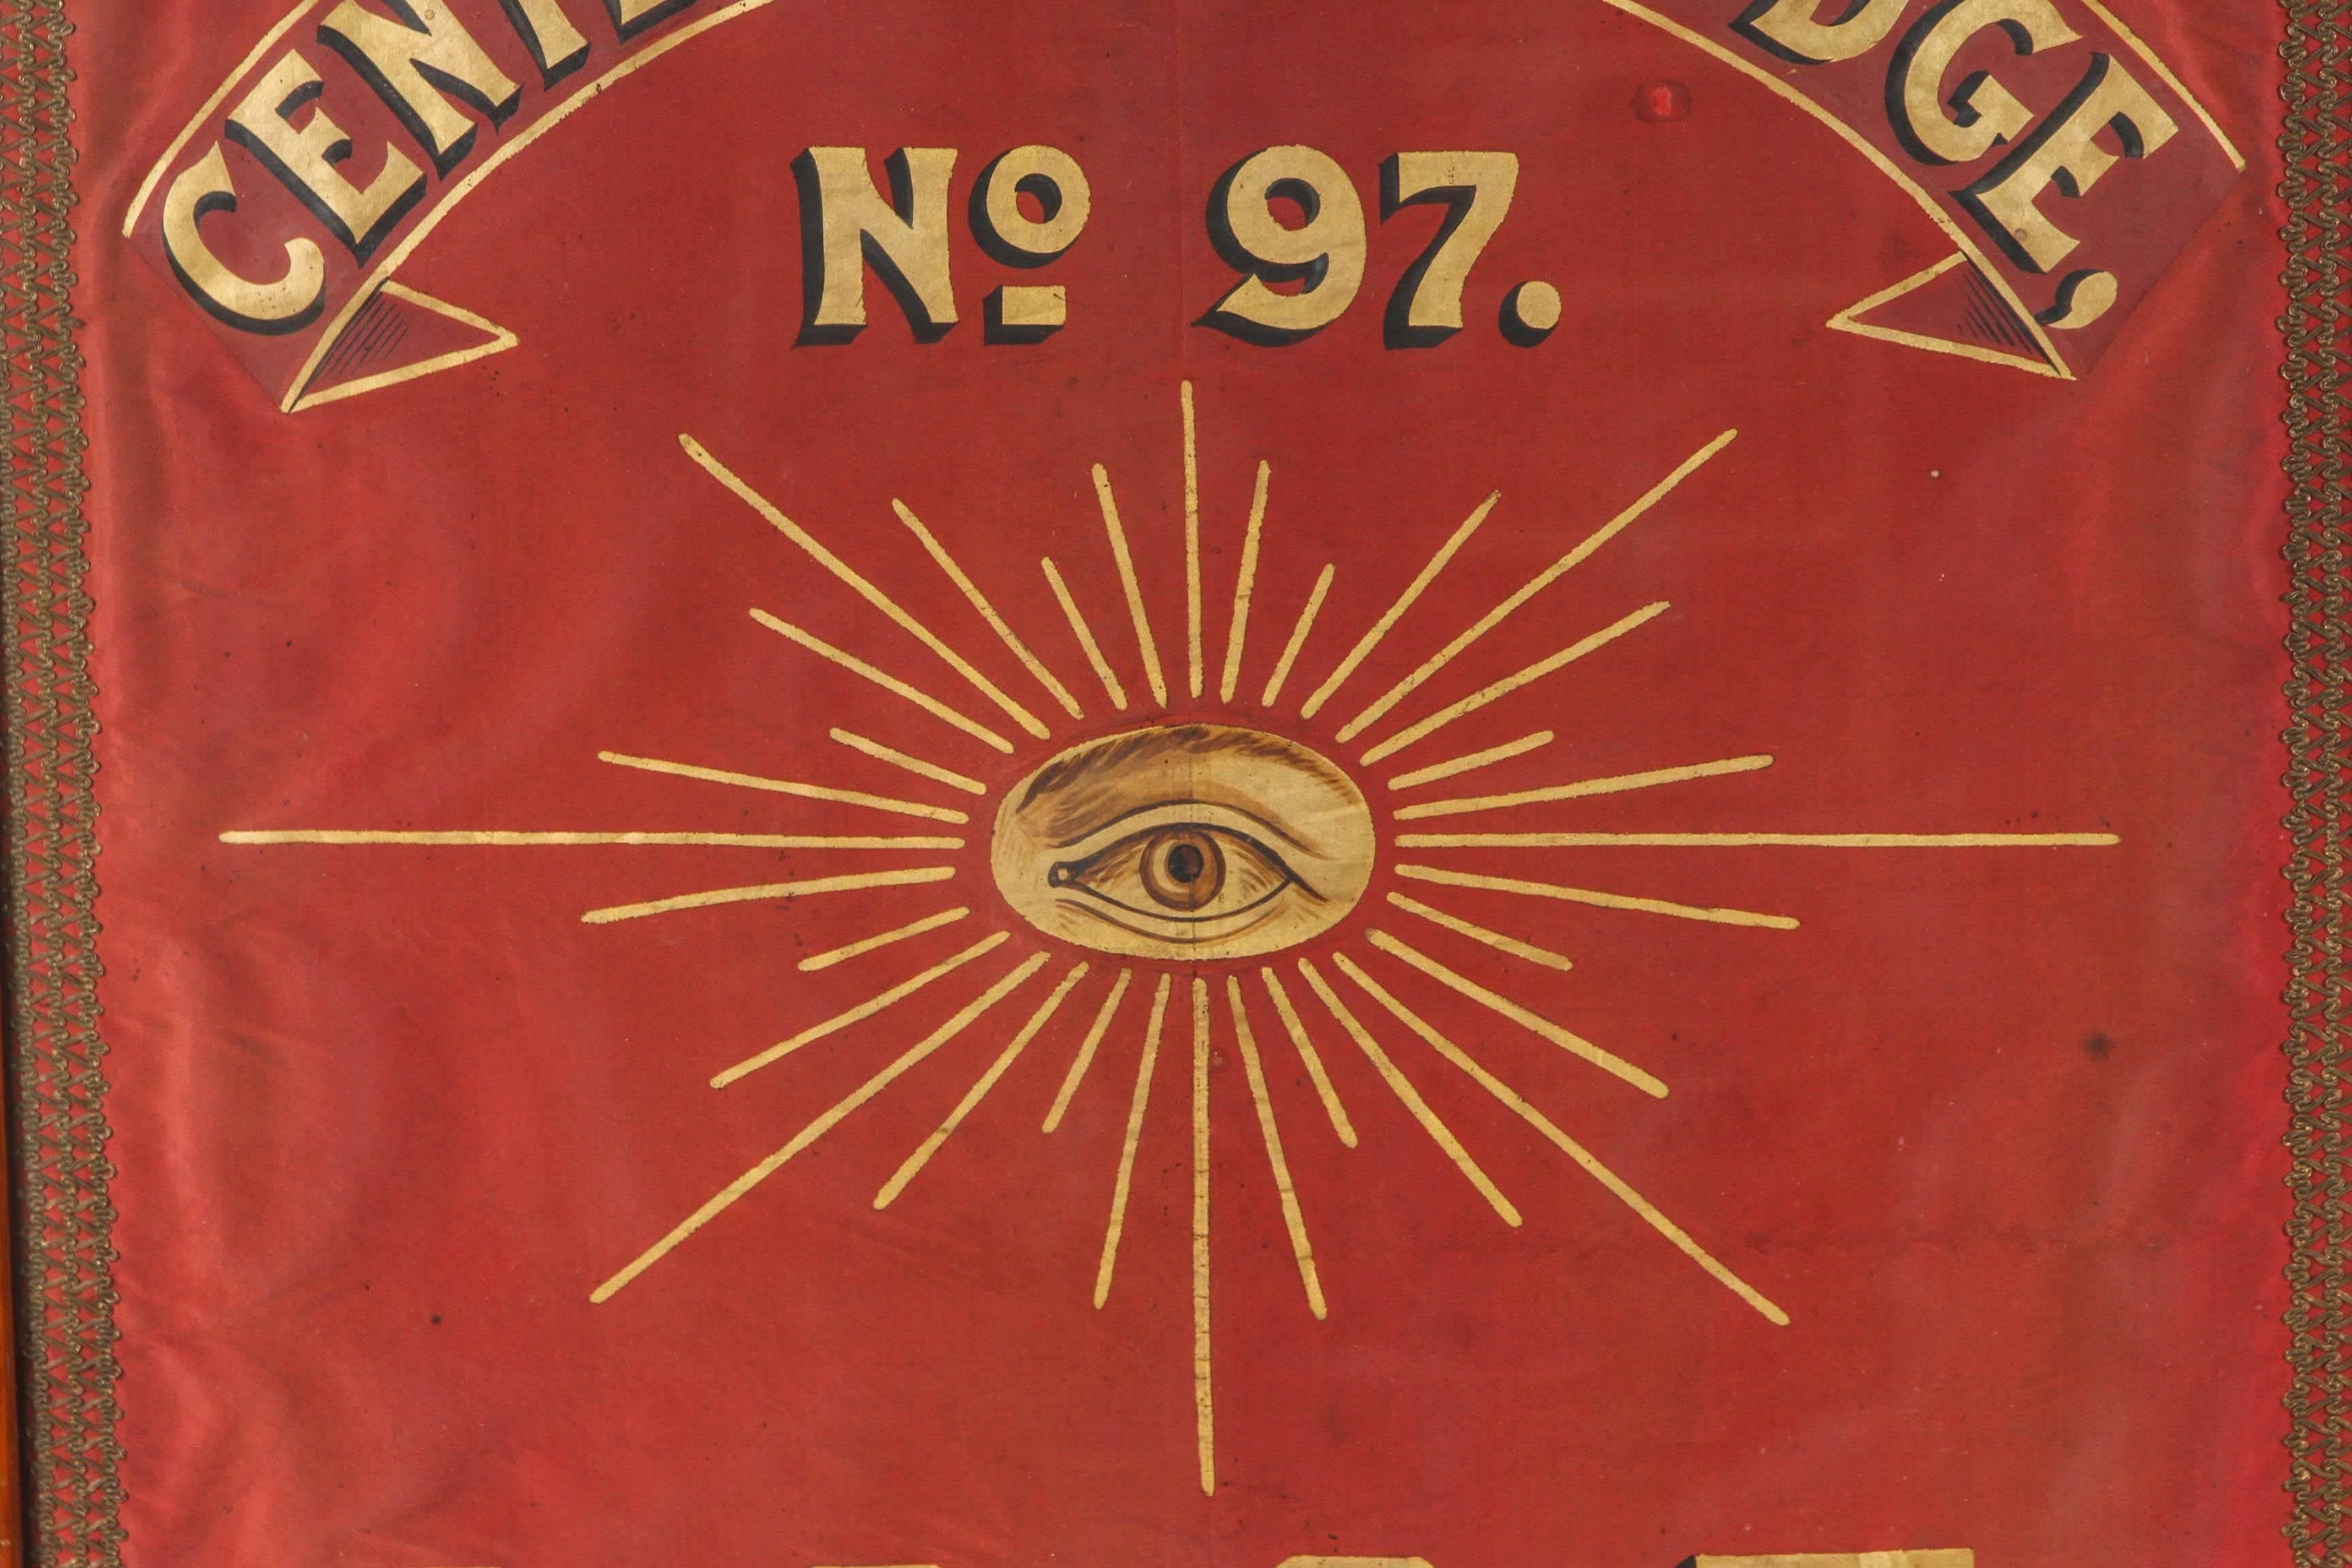 Bannière du début des années 1880 de l'Odd Fellows Lodge représentant l'œil qui voit tout, provenant de Centerville, Dakota. Excellente peinture à la main et lettrage. Centerville a été fondée en 1883. Le Dakota du Nord et le Dakota du Sud sont